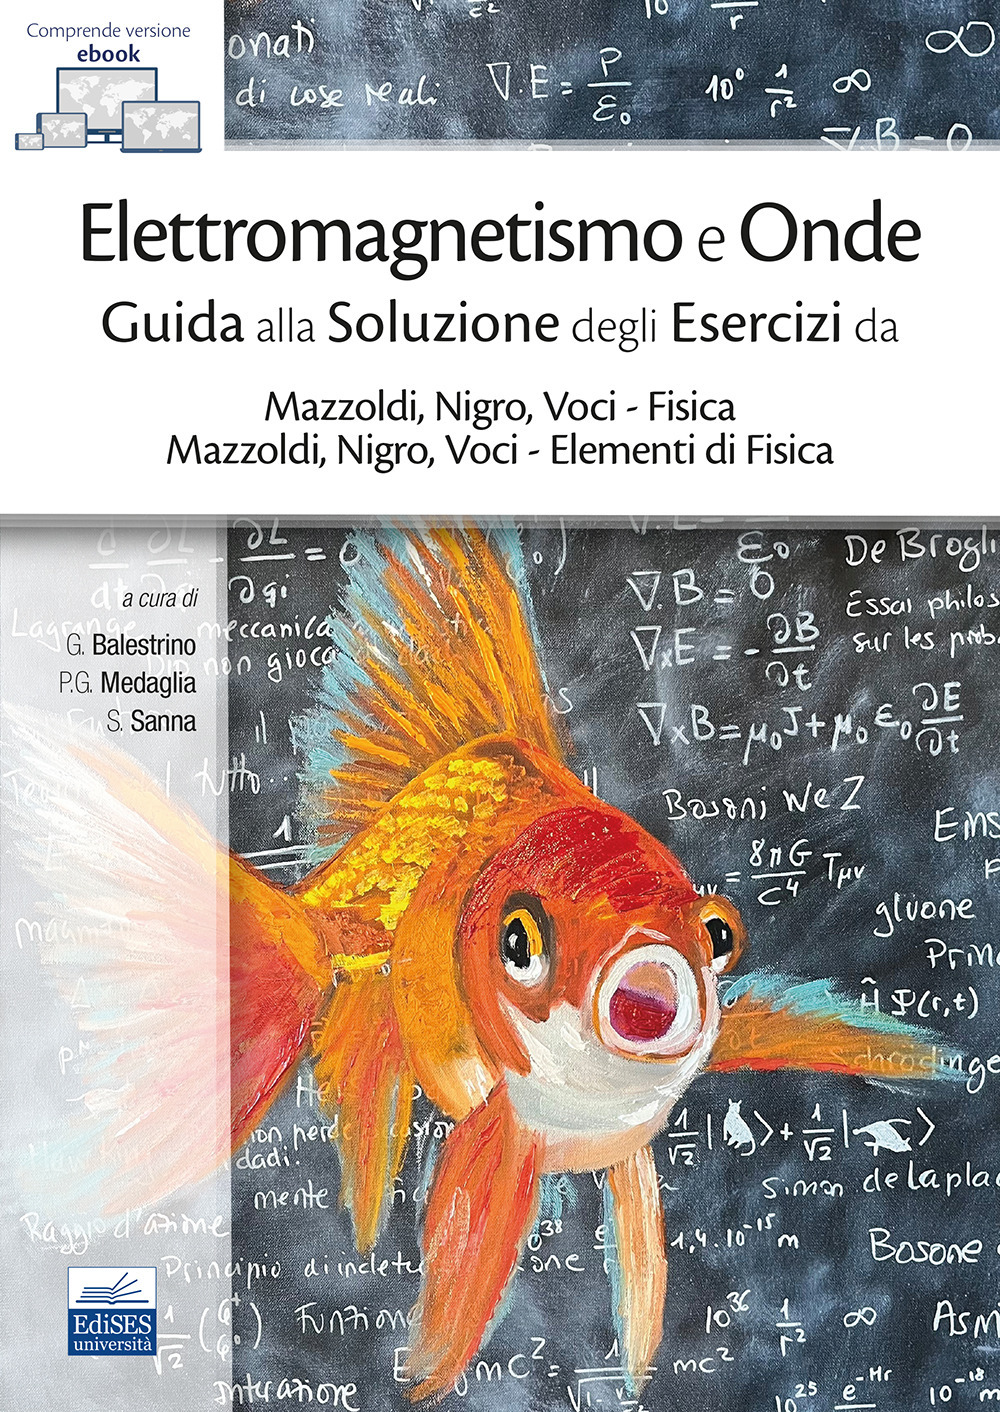 Elettromagnetismo e onde. Guida alla soluzione degli esercizi da Mazzoldi, Nigro, Voci-Fisica e Mazzoldi, Nigro, Voci-Elementi di Fisica. Con ebook